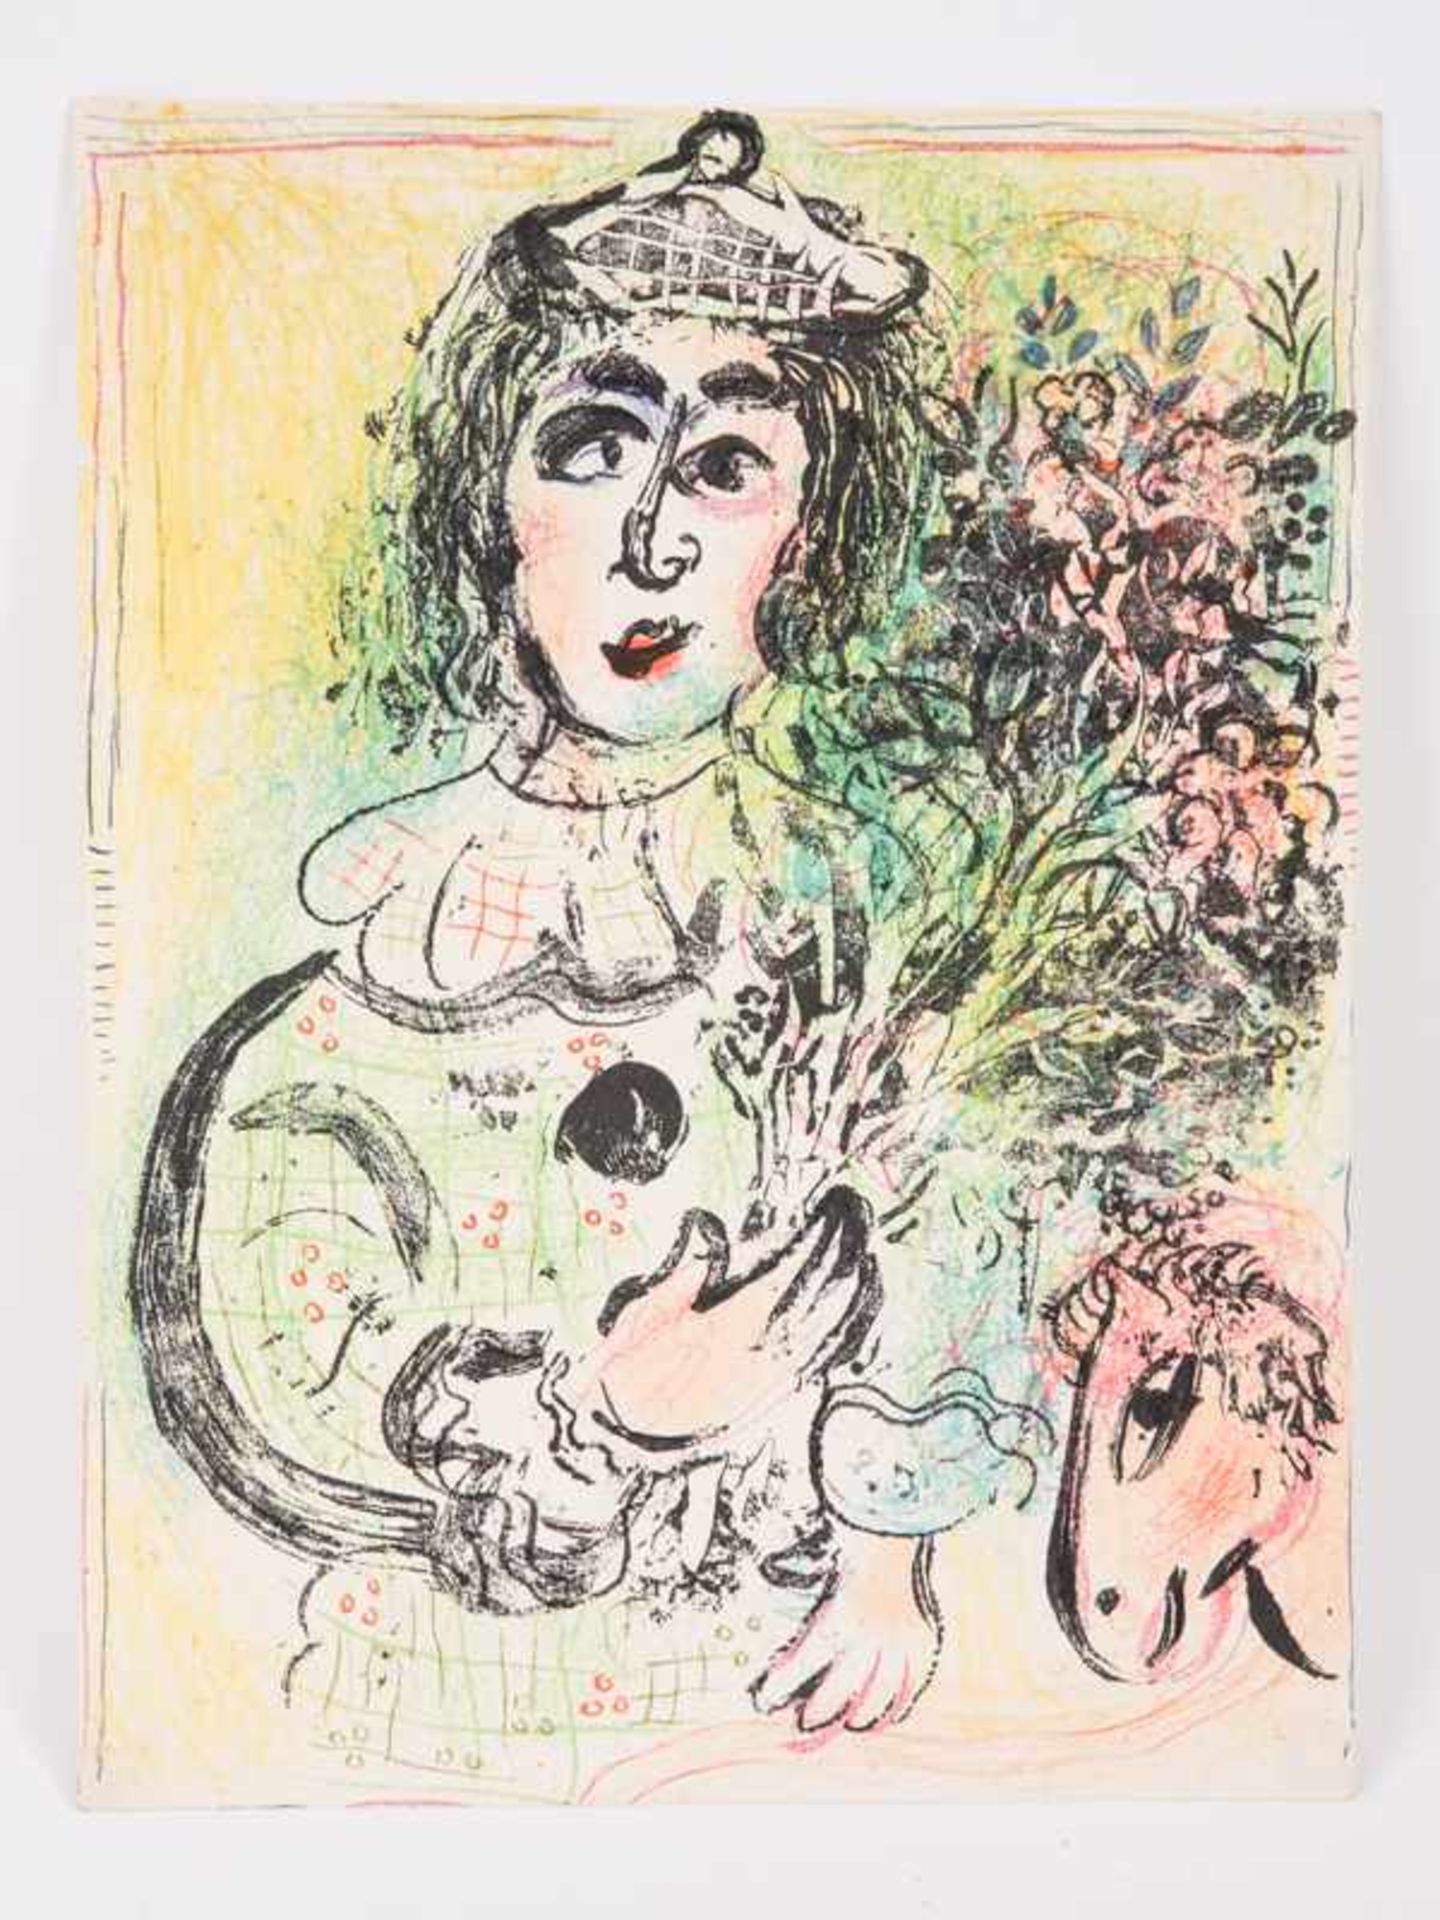 Chagall, Marc (1887 - 1985). Farblithographie, "Blumengeschmückter Clown", unsigniert; verlegt bei